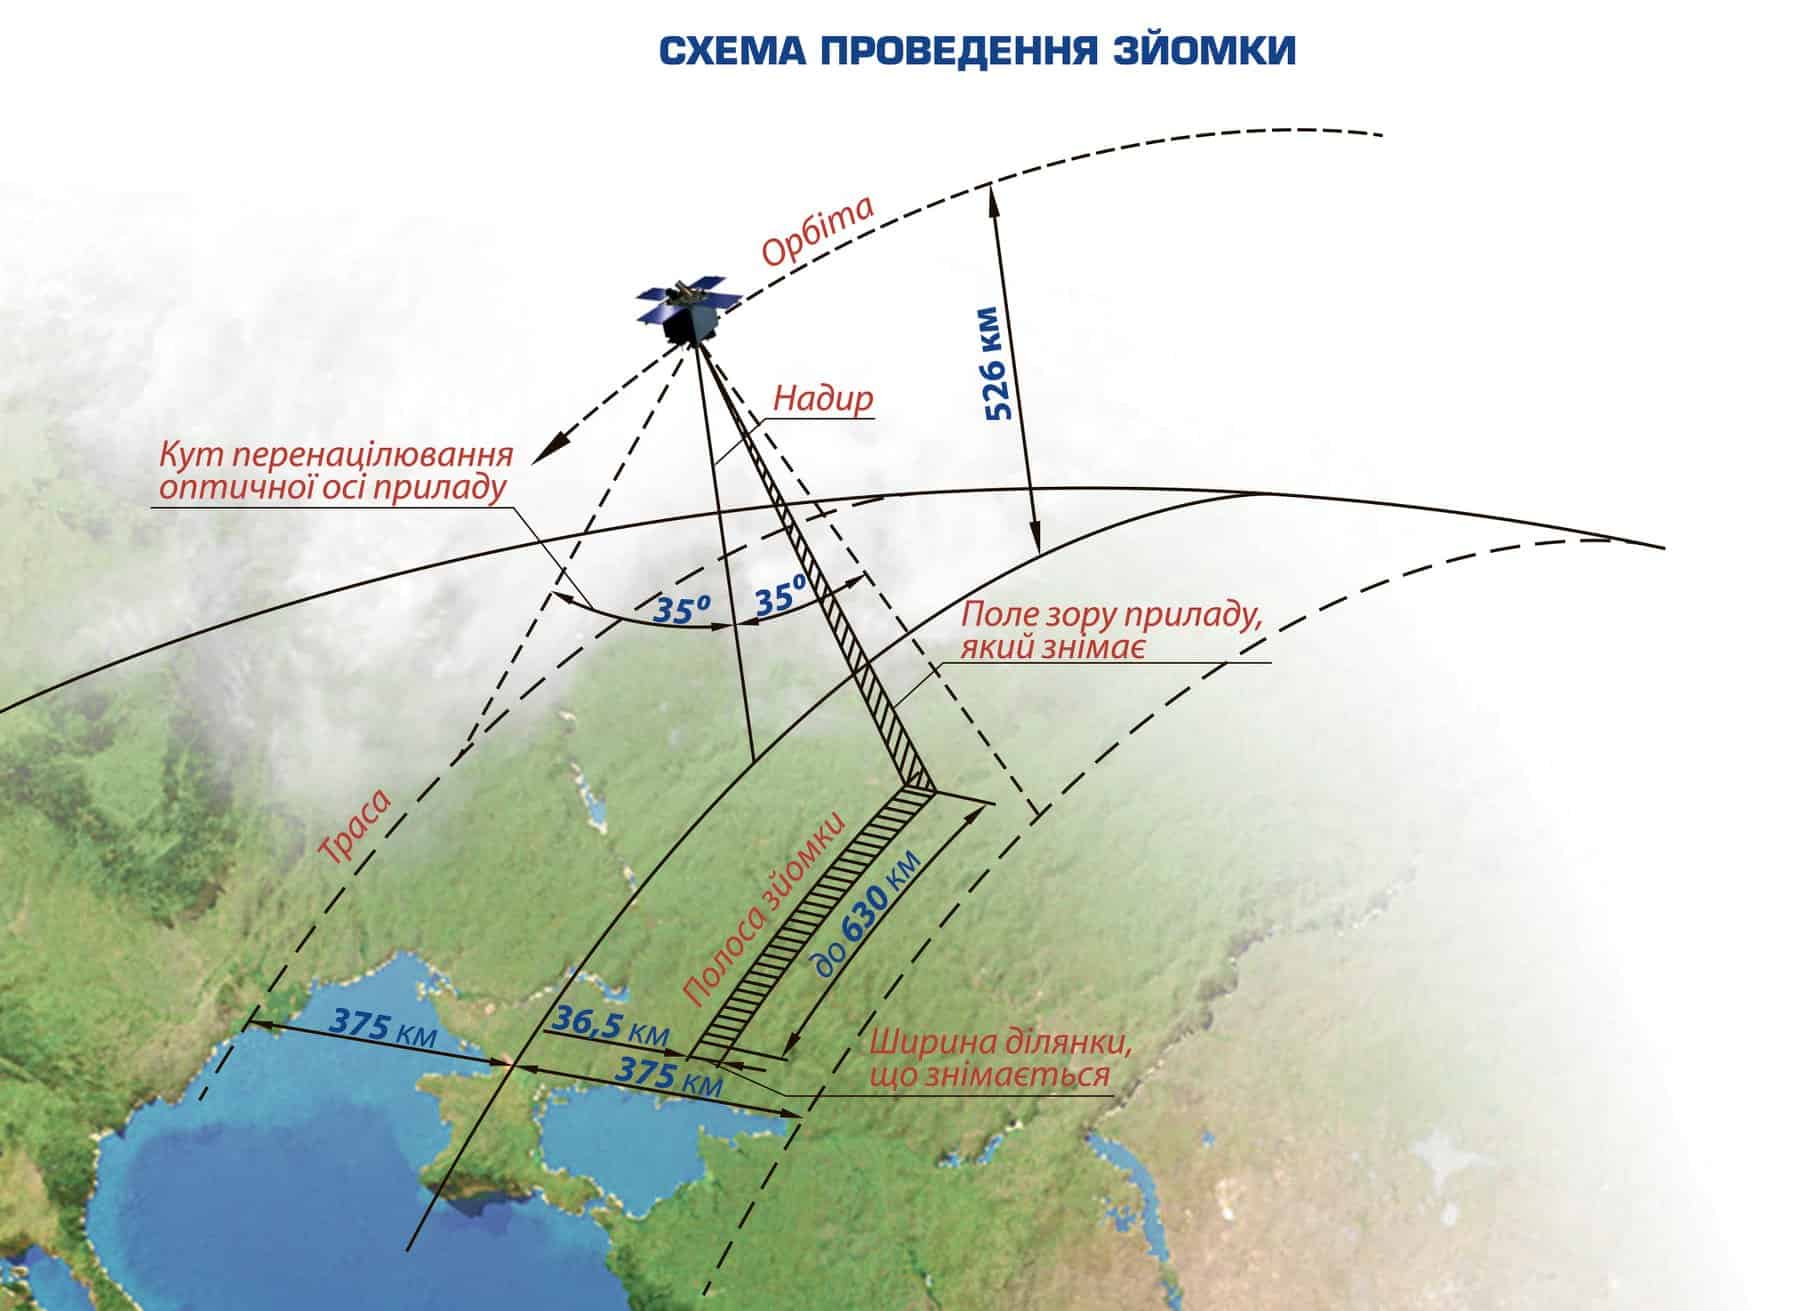 Схема проведення зйомки з супутника «Січ-2-1» («Січ-2-30»)